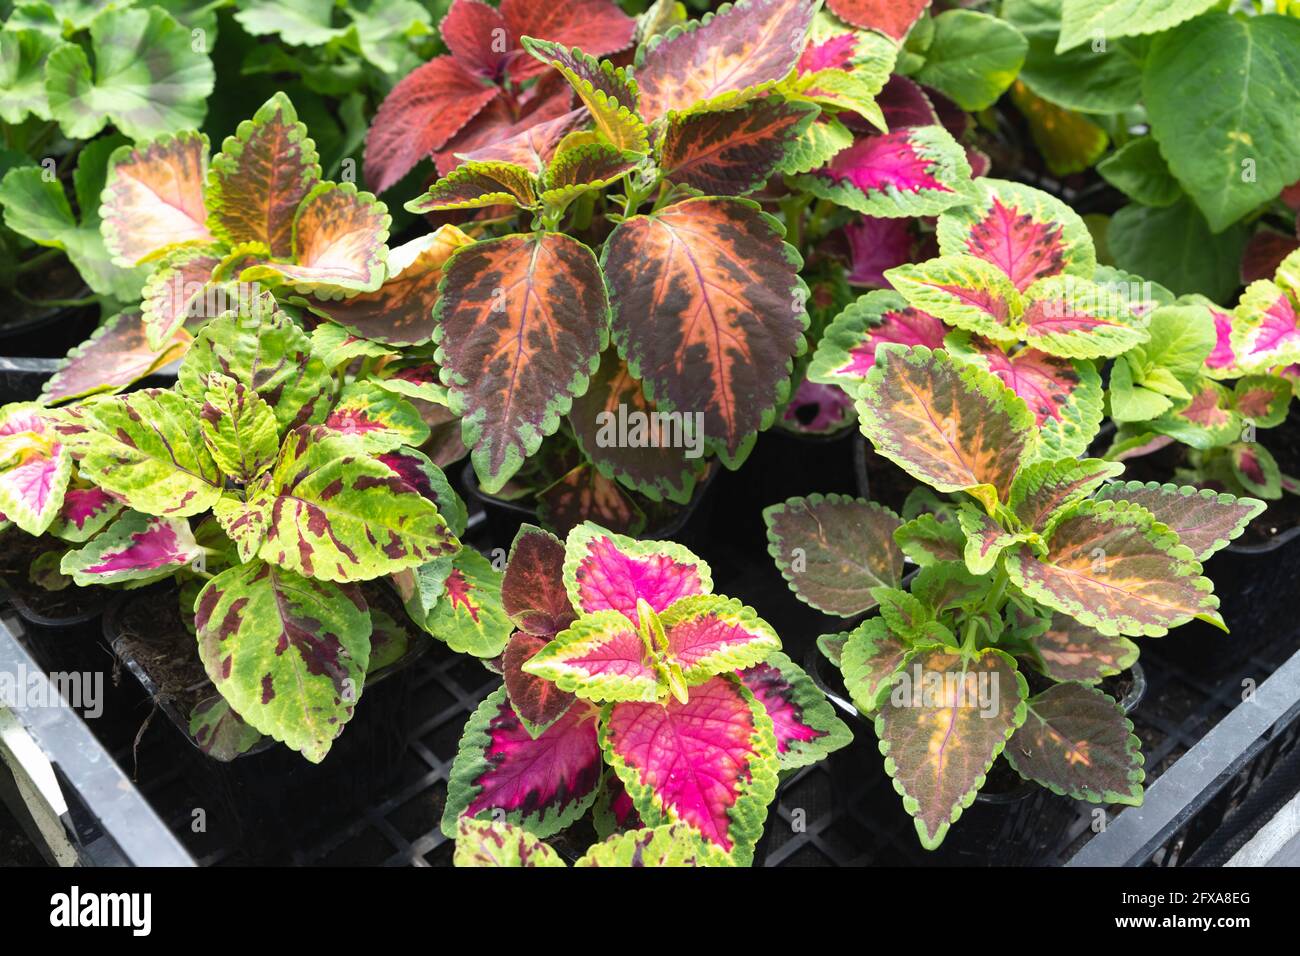 Mescolate diverse spezie di Coleus Scutellarioides, piante decorative in vaso con foglie colorate Foto Stock